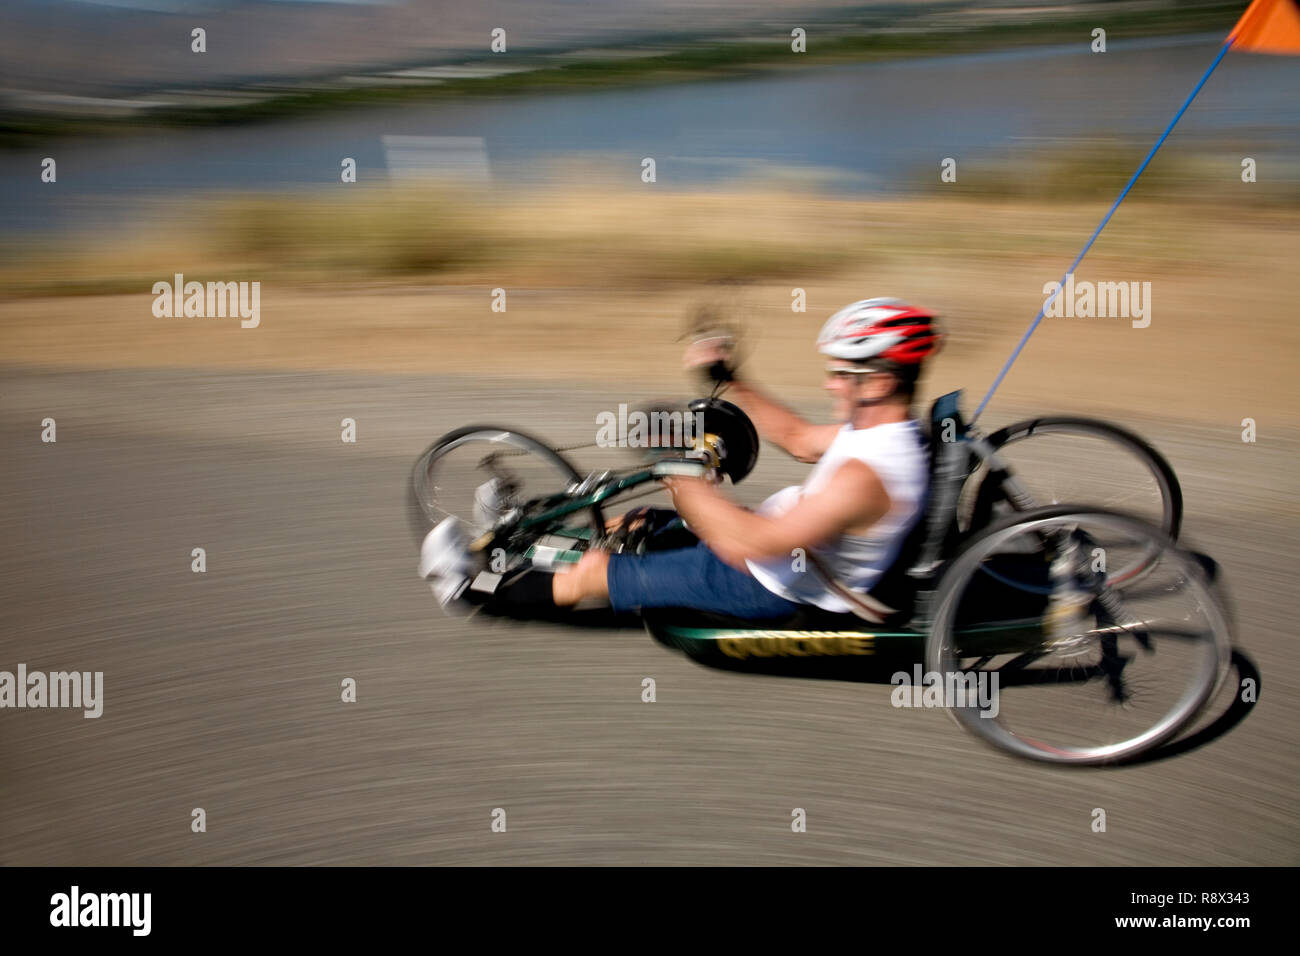 Handkurbel Fahrrad Stockfotos und -bilder Kaufen - Alamy